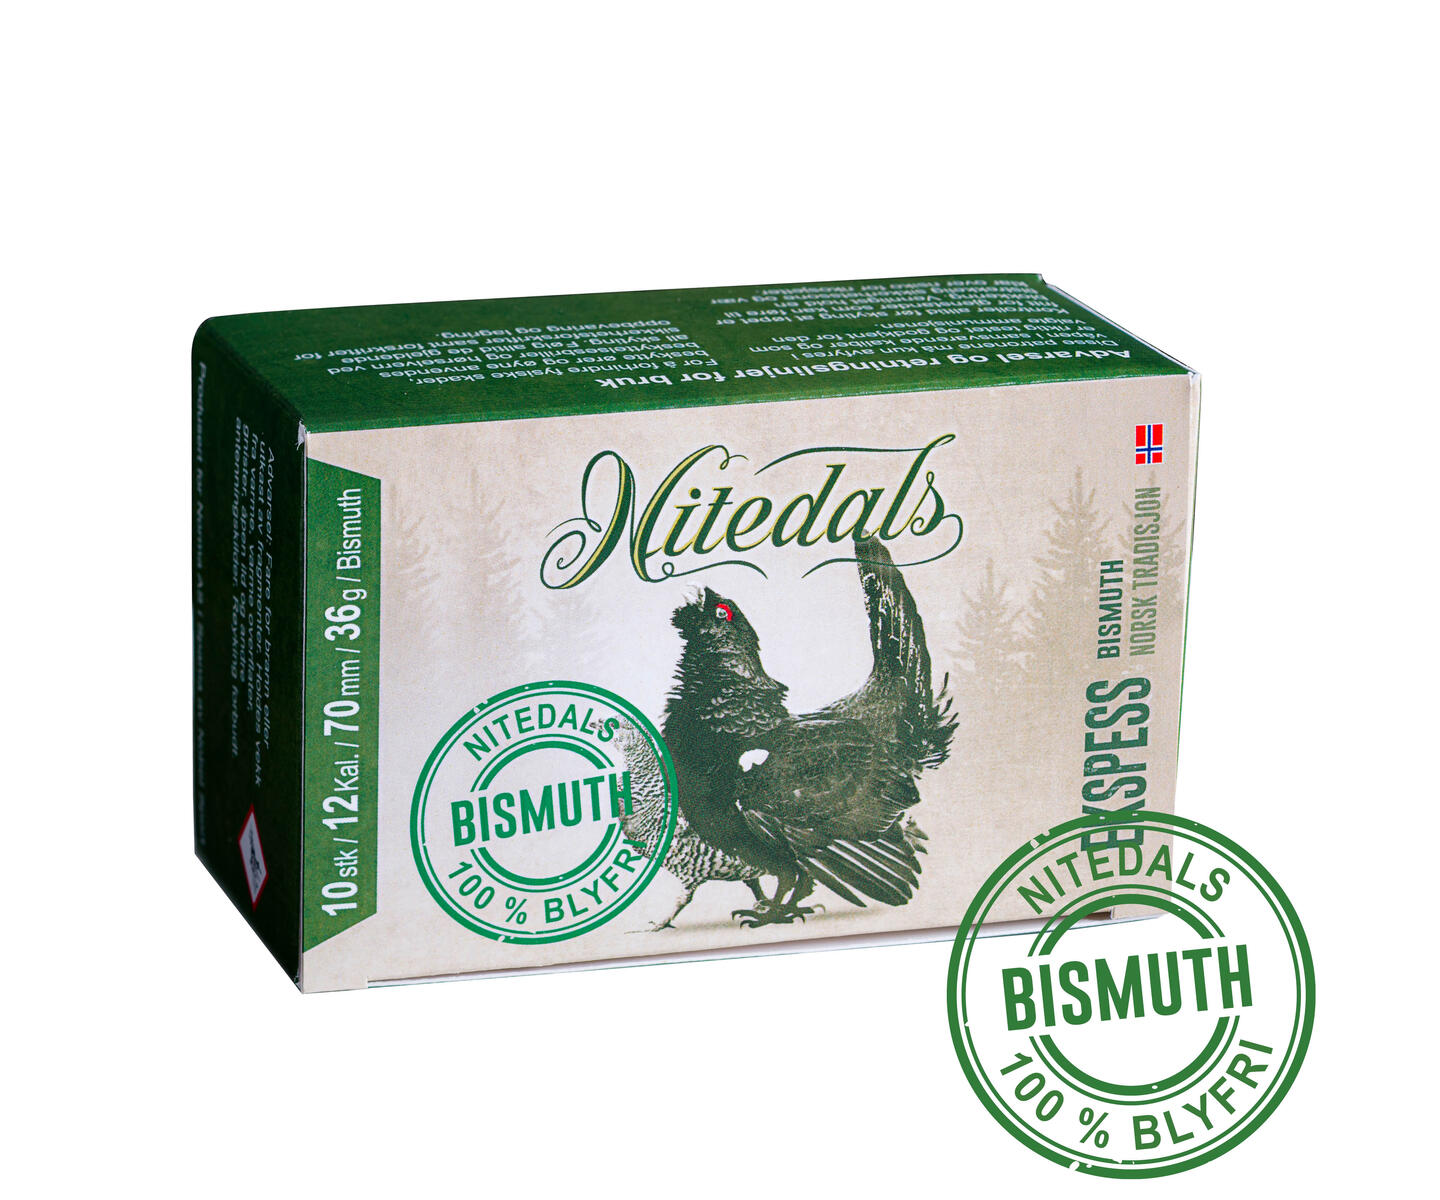 Nitedals Ekspress Bismuth 12/70 US2 36 g